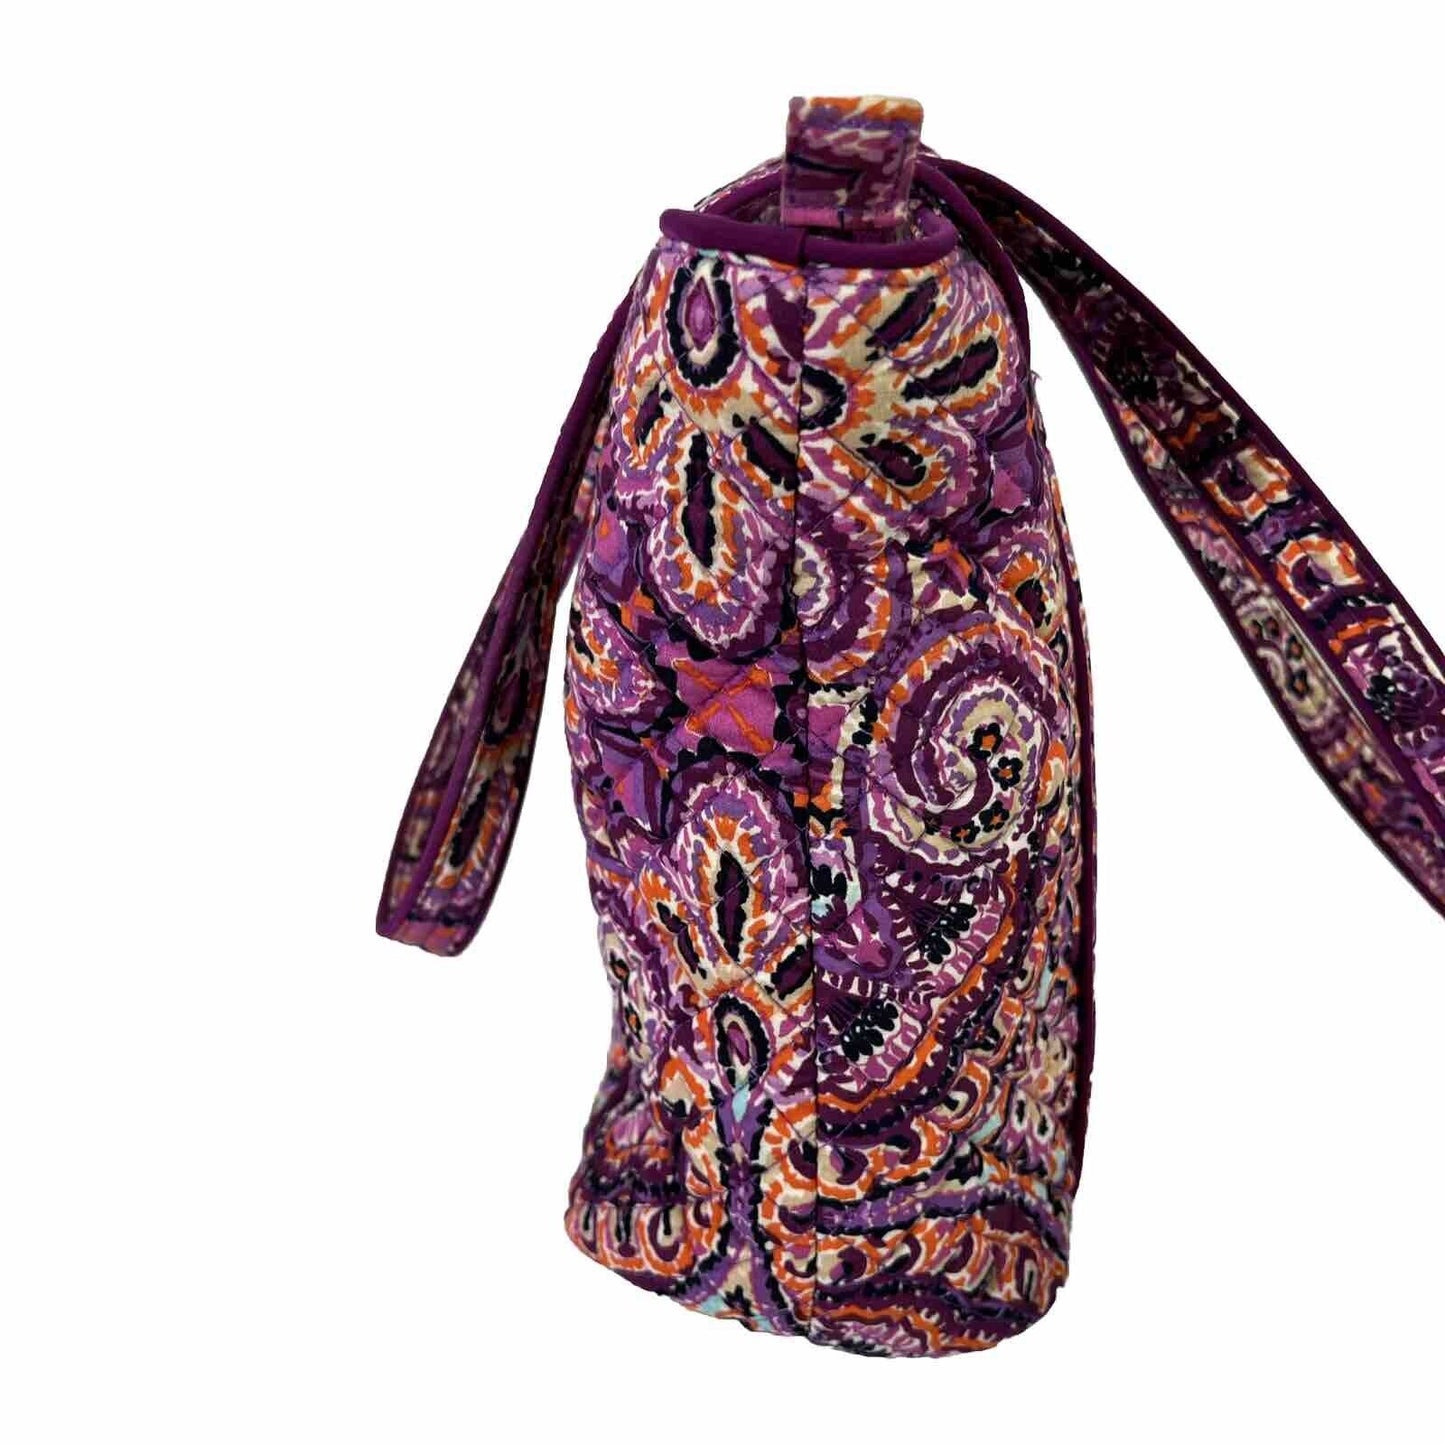 Vera Bradley Purple Dream Tapestry Iconic Tote Purse